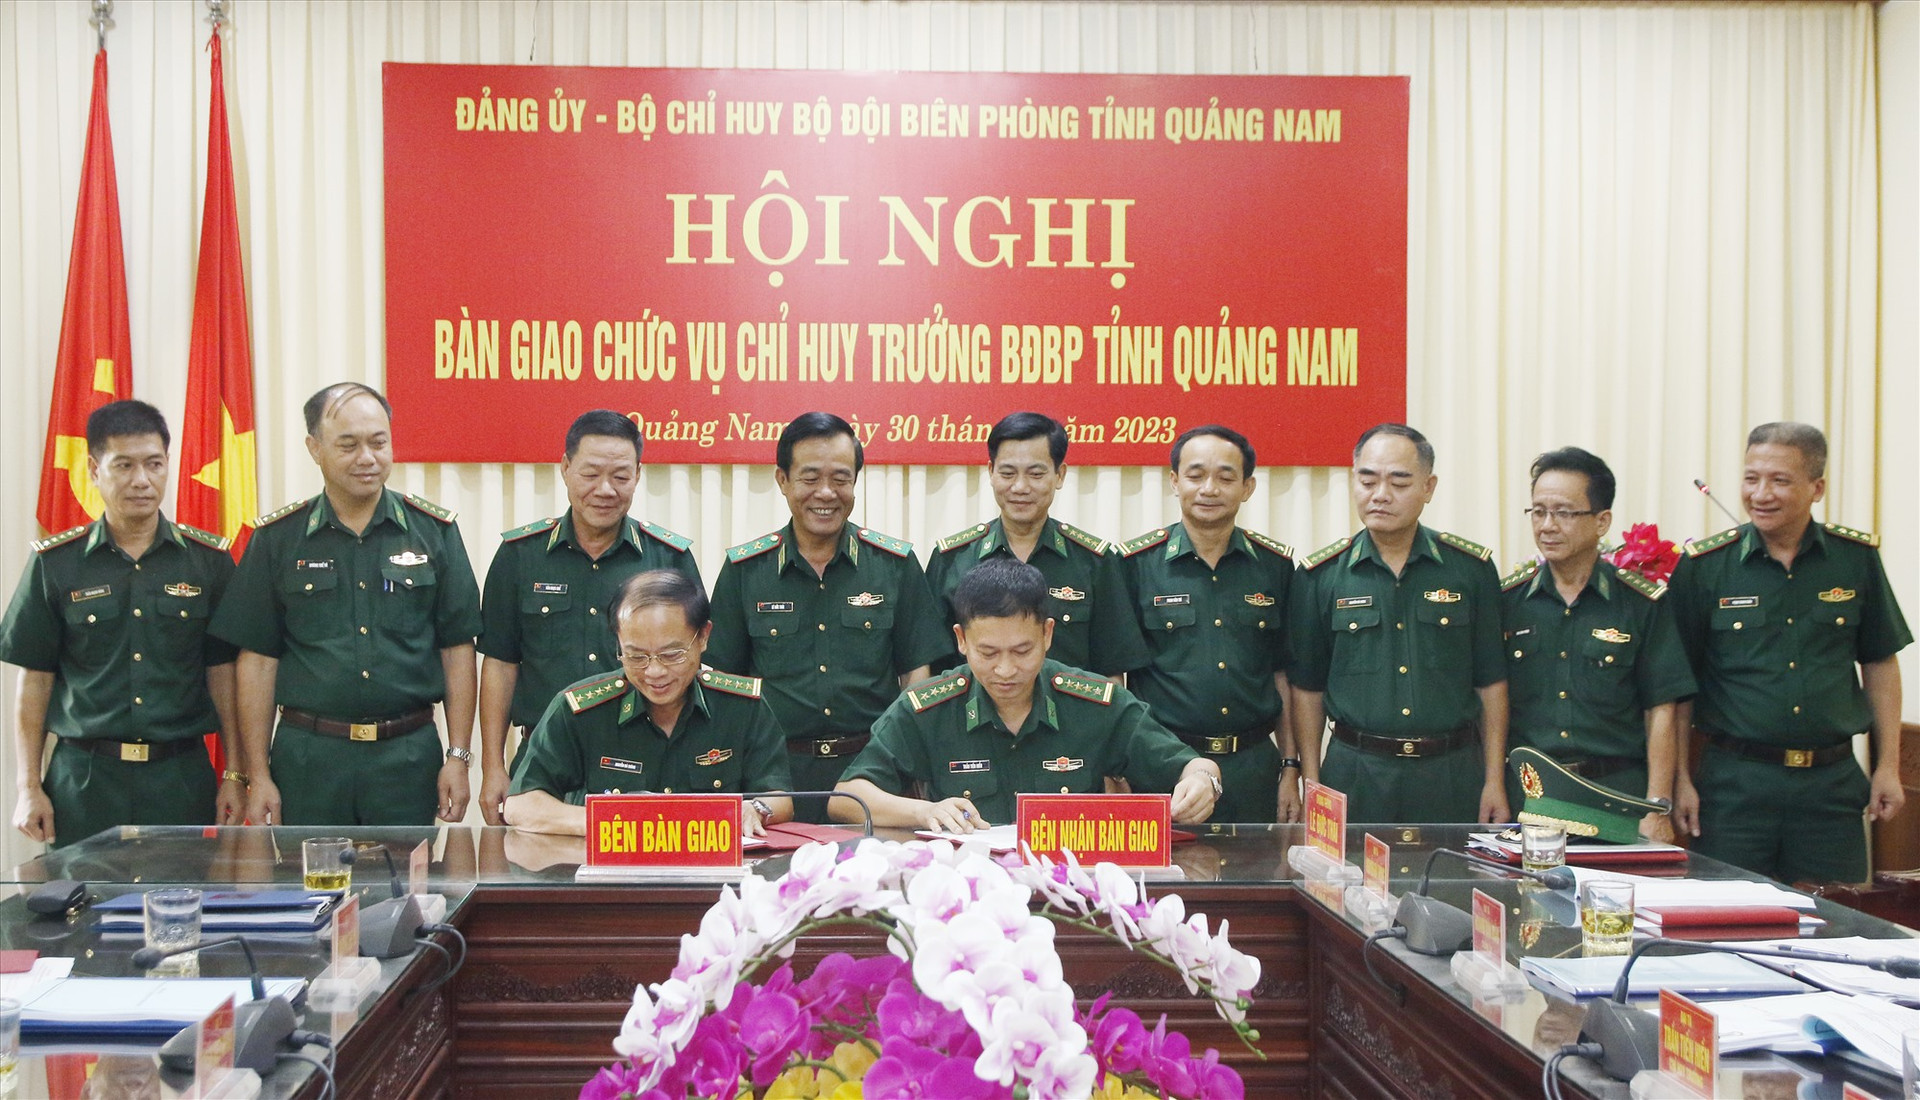 Ký kết bàn giao chức trách, nhiệm vụ Chỉ huy trưởng BĐBP Quảng Nam. Ảnh: HUỲNH CHÍN